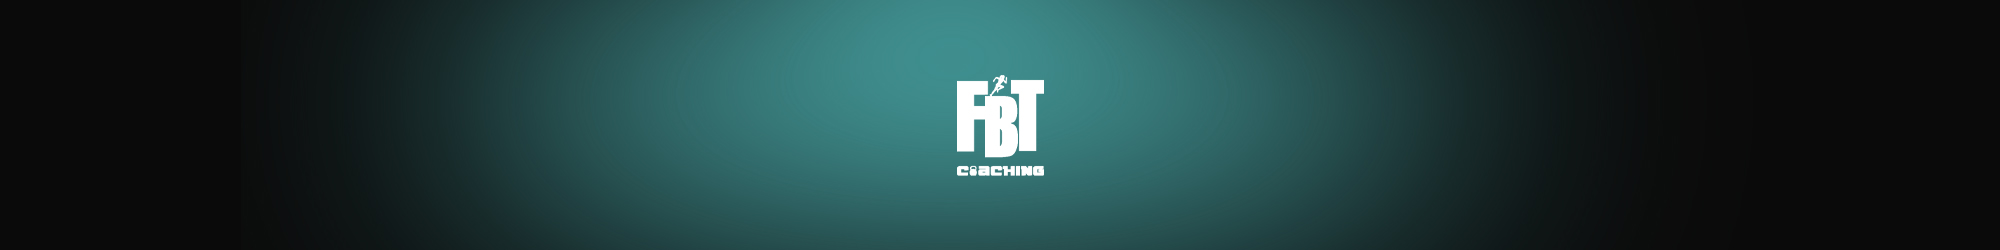 FBT Coaching